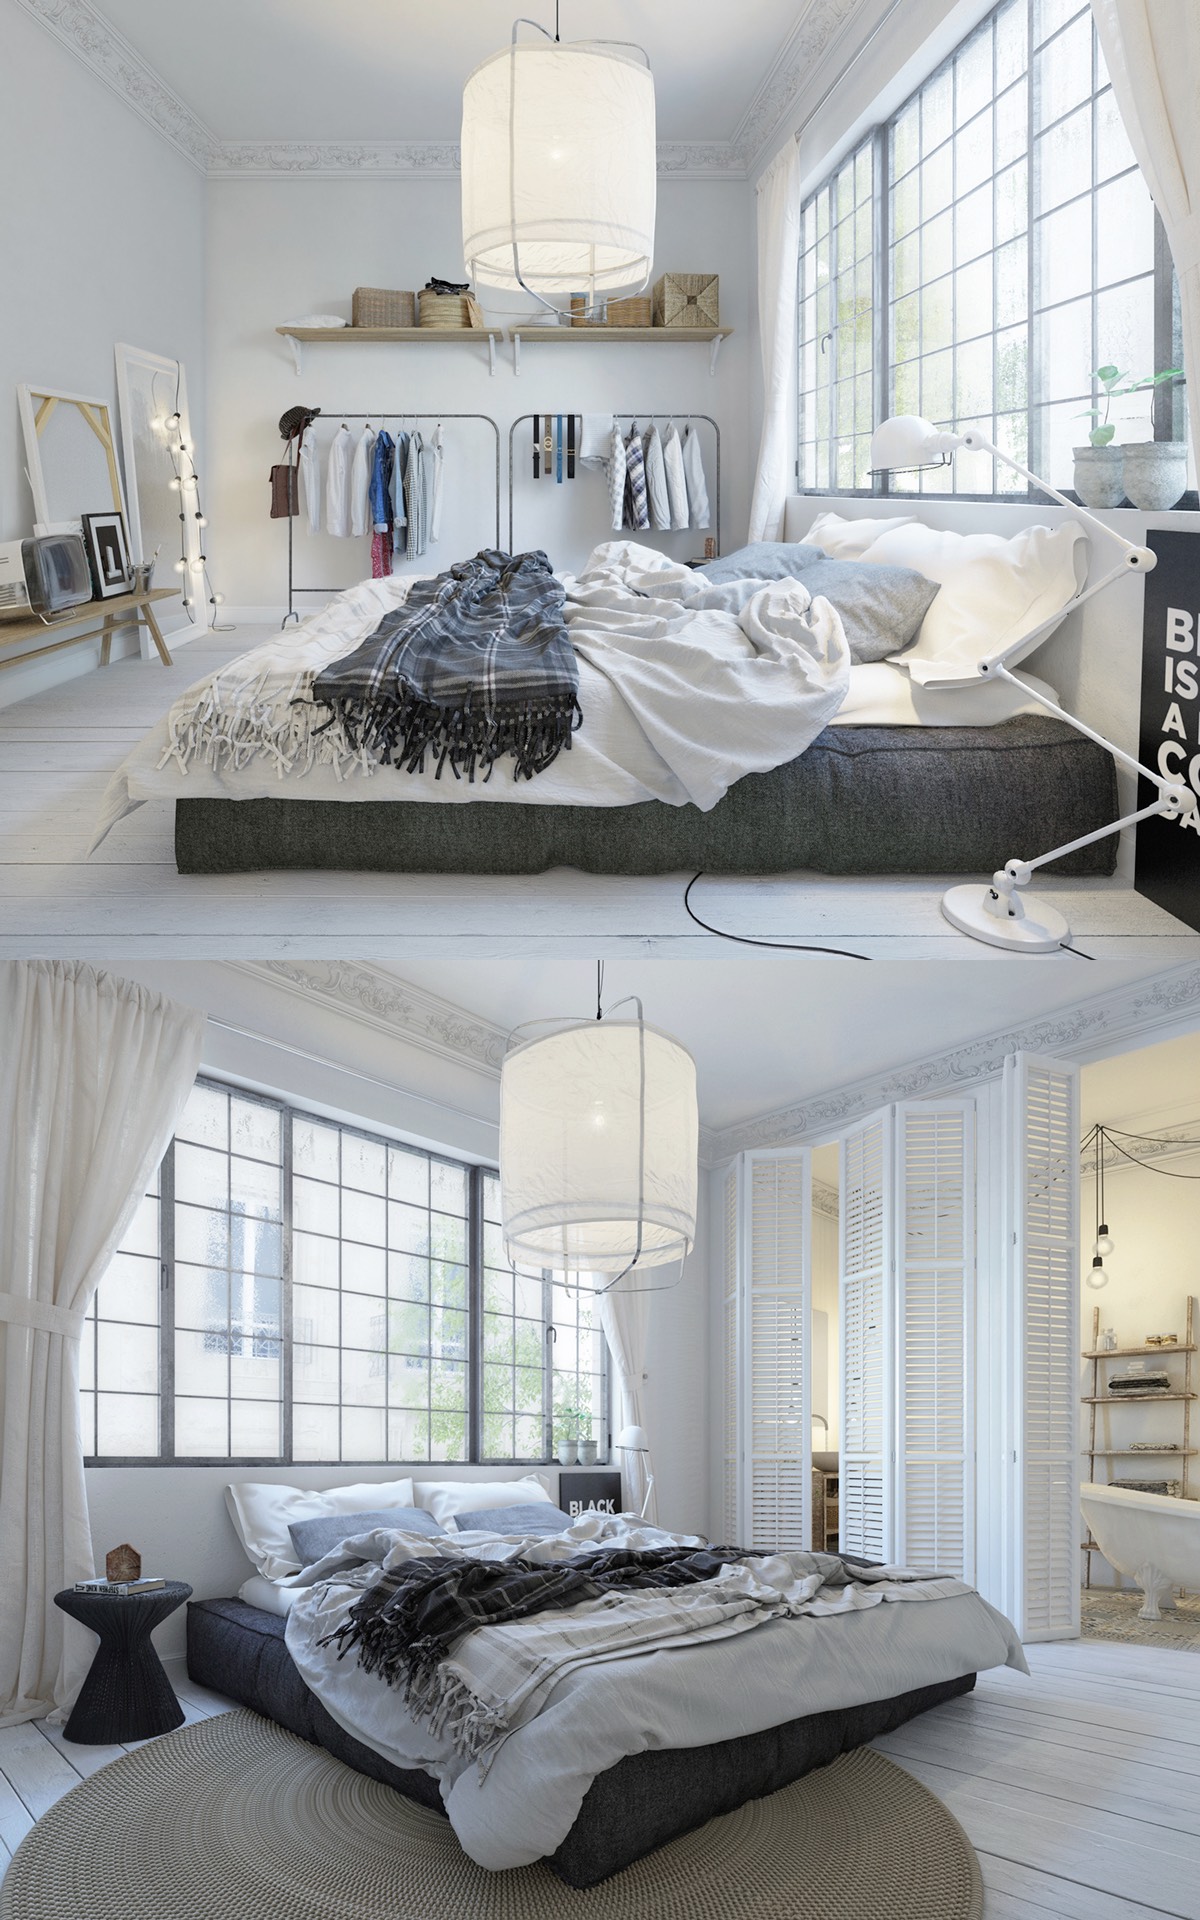 Scandinavian bedroom design "width =" 1200 "height =" 1920 "srcset =" https://mileray.com/wp-content/uploads/2020/05/1588511248_137_Scandinavian-Bedroom-Design-For-Woman-With-A-White-Color-Scheme.jpg 1200w, https://mileray.com/ wp -content / uploads / 2016/04 / Aleksandra-Nuzhnaya-188x300.jpg 188w, https://mileray.com/wp-content/uploads/2016/04/Aleksandra-Nuzhnaya-768x1229.jpg 768w, https: // myfashionos .com / wp-content / uploads / 2016/04 / Aleksandra-Nuzhnaya-640x1024.jpg 640w, https://mileray.com/wp-content/uploads/2016/04/Aleksandra-Nuzhnaya-696x1114.jpg 696w, https : //mileray.com/wp-content/uploads/2016/04/Aleksandra-Nuzhnaya-1068x1709.jpg 1068w, https://mileray.com/wp-content/uploads/2016/04/Aleksandra-Nuzhnaya-263x420. jpg 263w "sizes =" (maximum width: 1200px) 100vw, 1200px